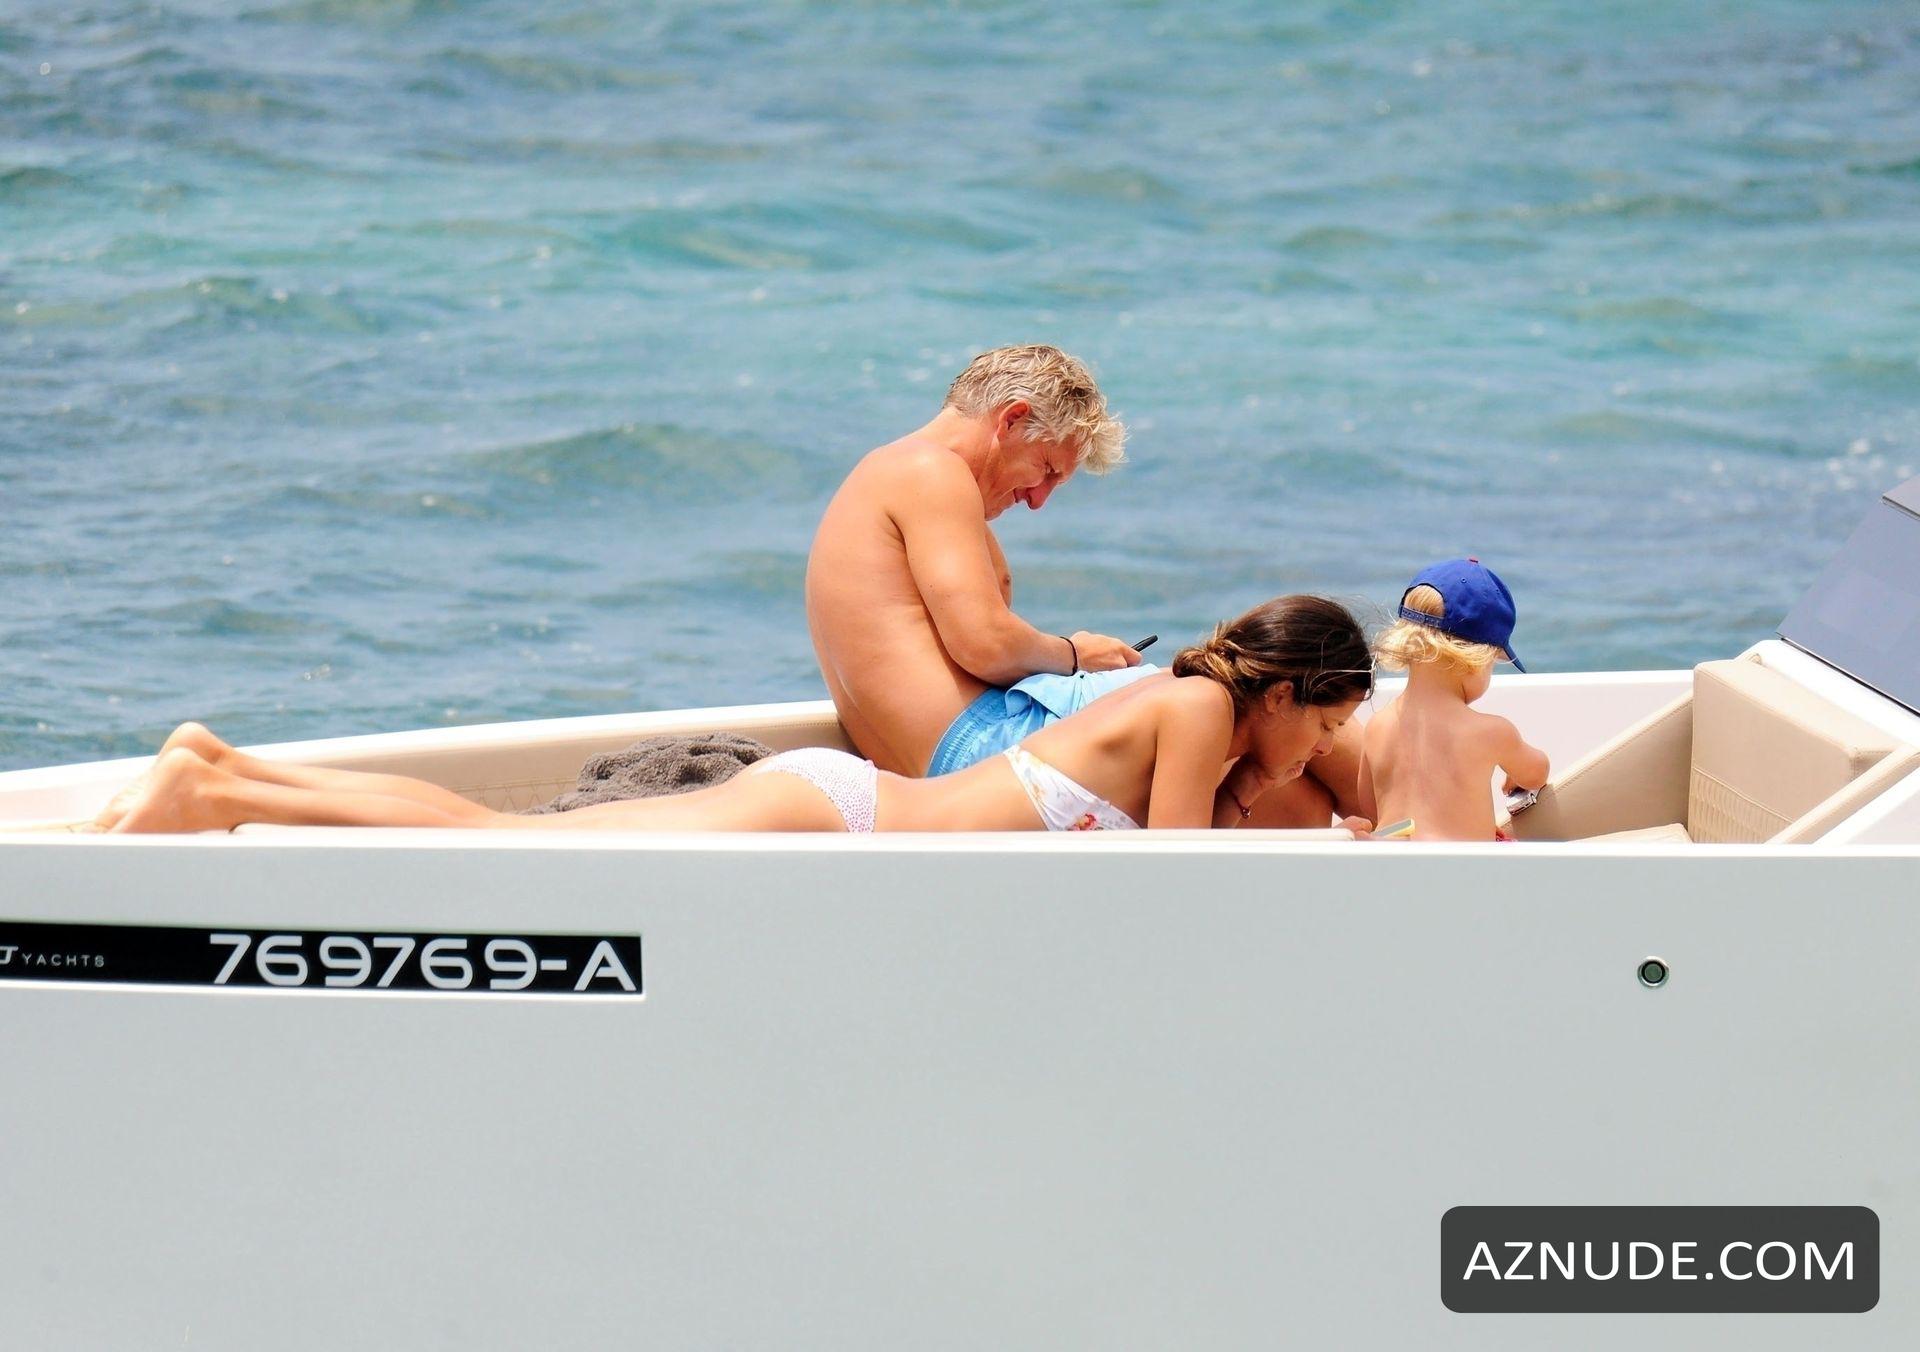 Ana Ivanovic And German Footballer Bastian Schweinsteiger Relax On A